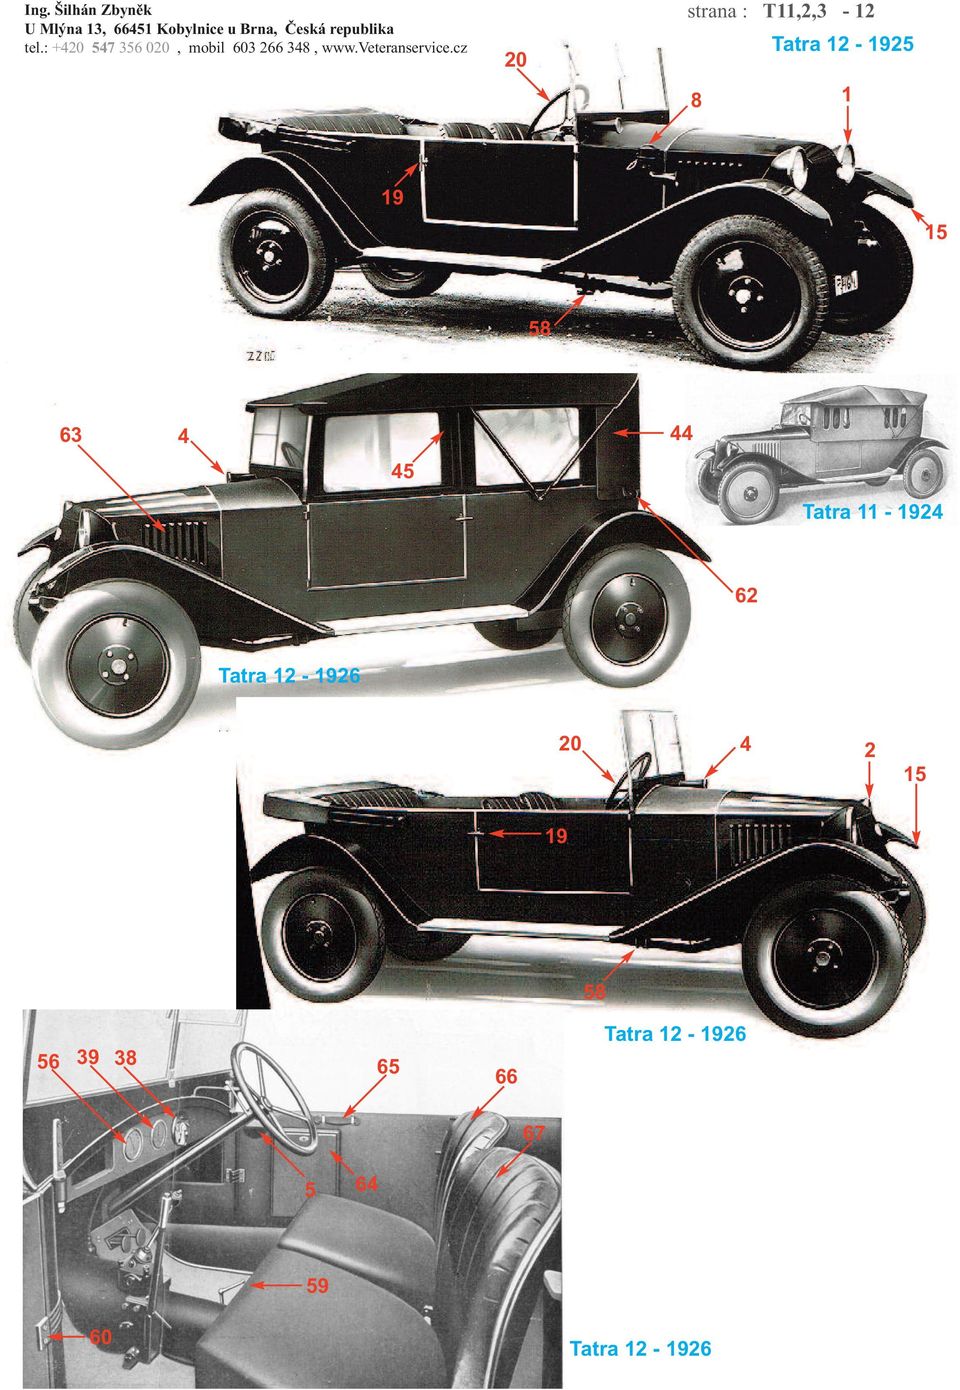 11-1924 62 Tatra 12-1926 20 4 2 15 19 58 56